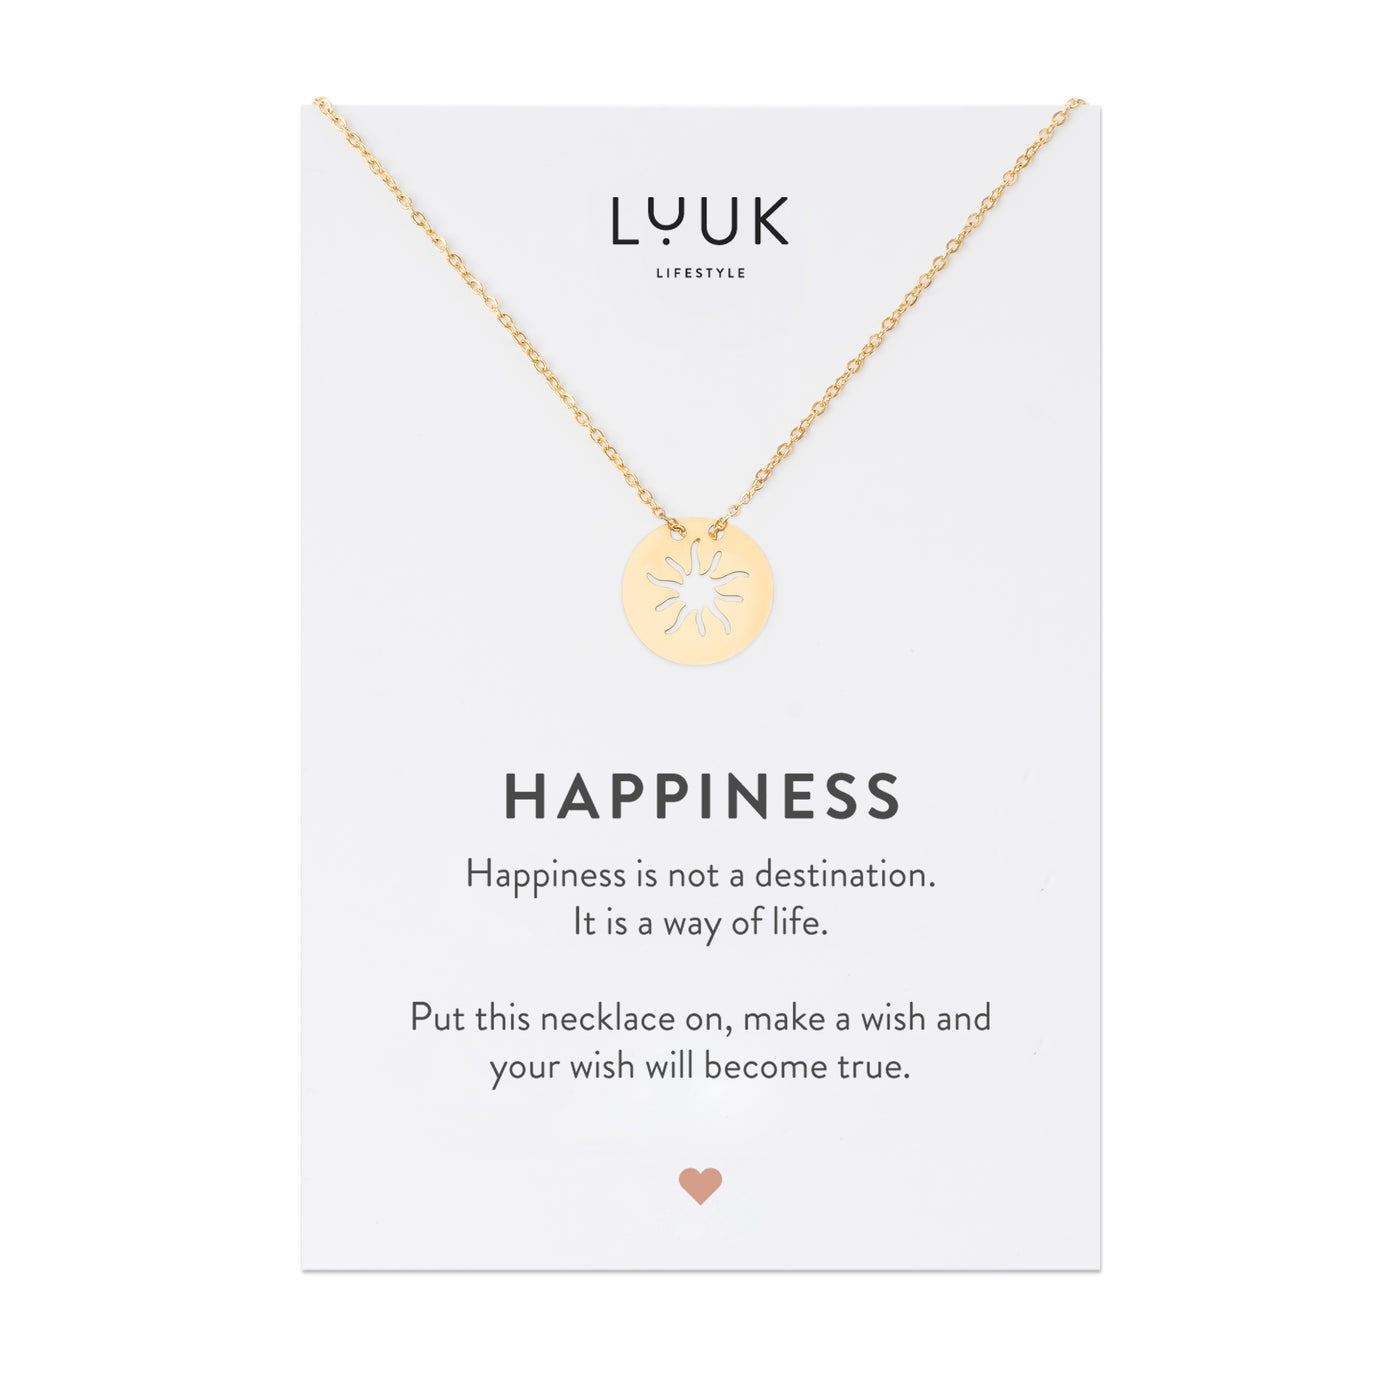 Goldene Halskette mit Sonnen Anhänger auf Happiness Spruchkarte von der Brand Luuk Lifestyle 